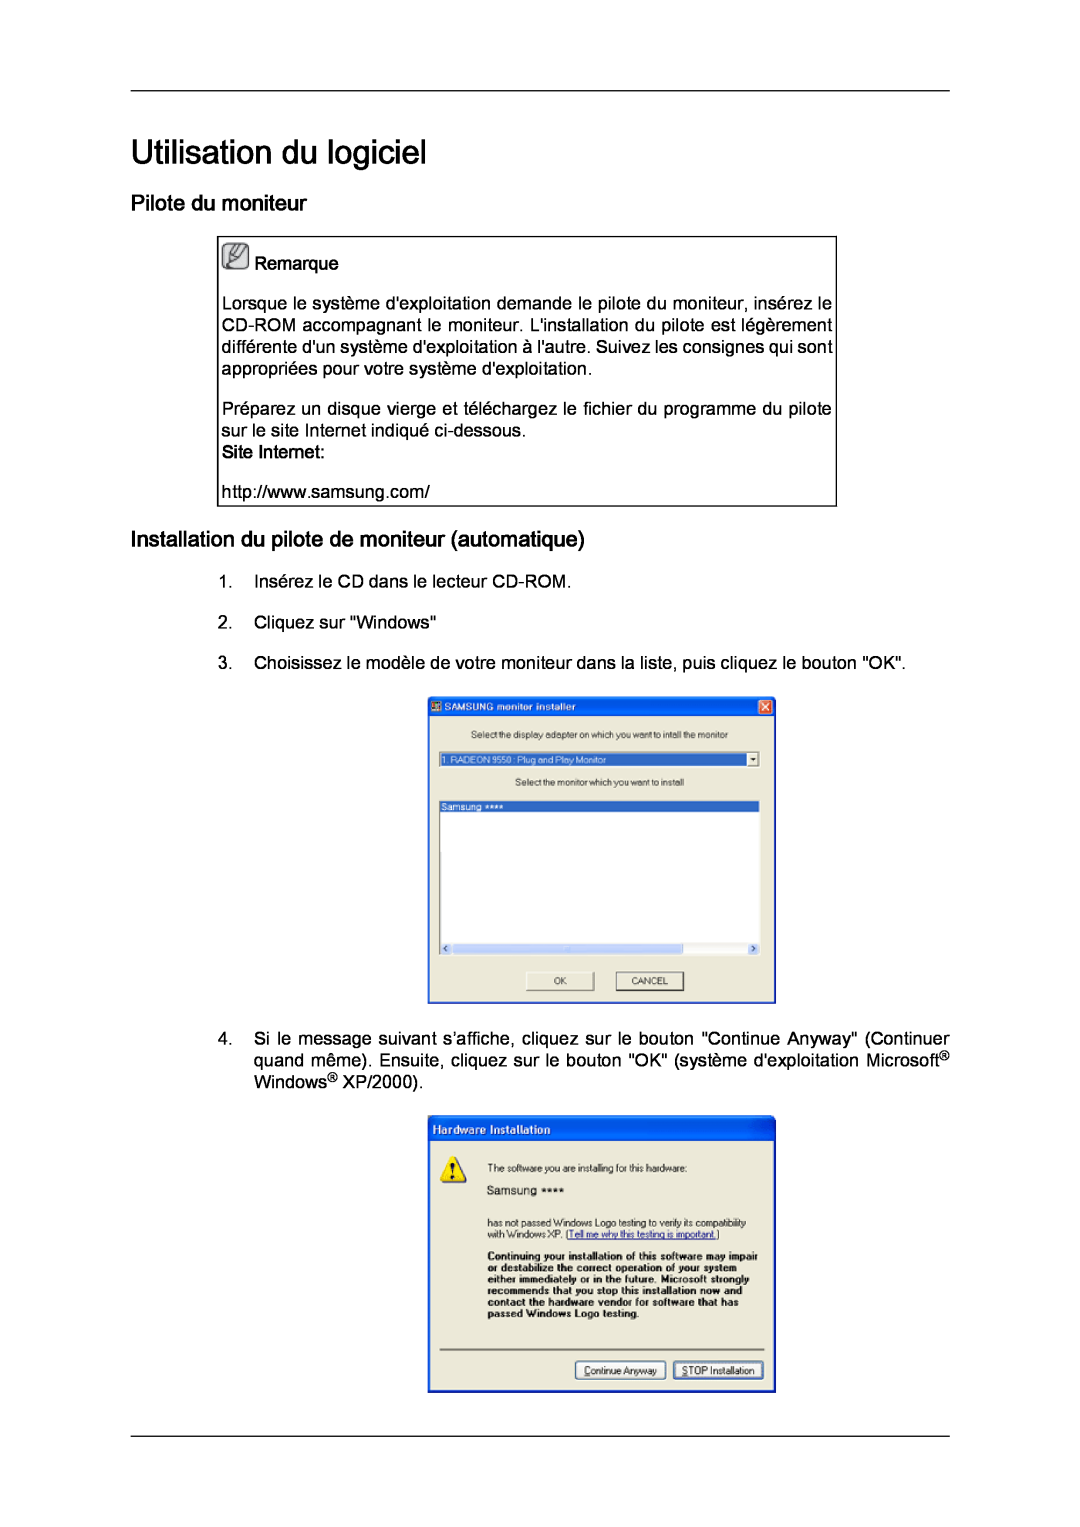 Samsung LH32CRSMBC/EN manual Utilisation du logiciel, Pilote du moniteur, Installation du pilote de moniteur automatique 